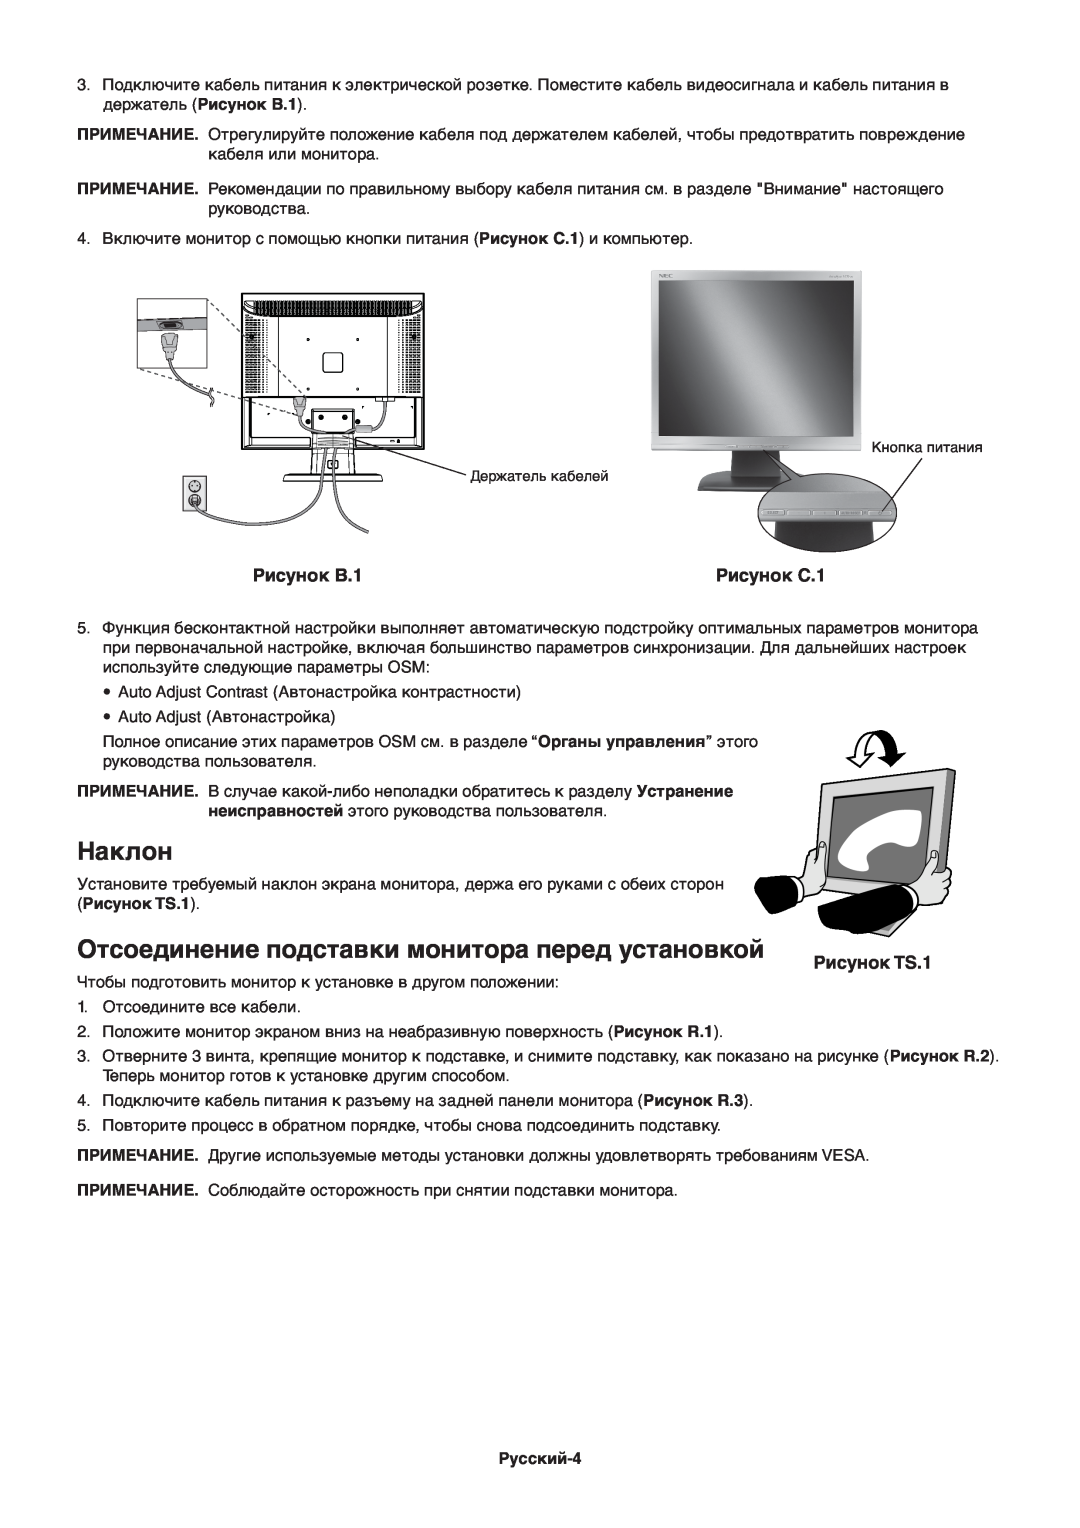 NEC ACCUSYNC LCD93V manual Наклон, Отсоединение подставки монитора перед установкой, Рисунок B.1, Рисунок C.1, Рисунок TS.1 